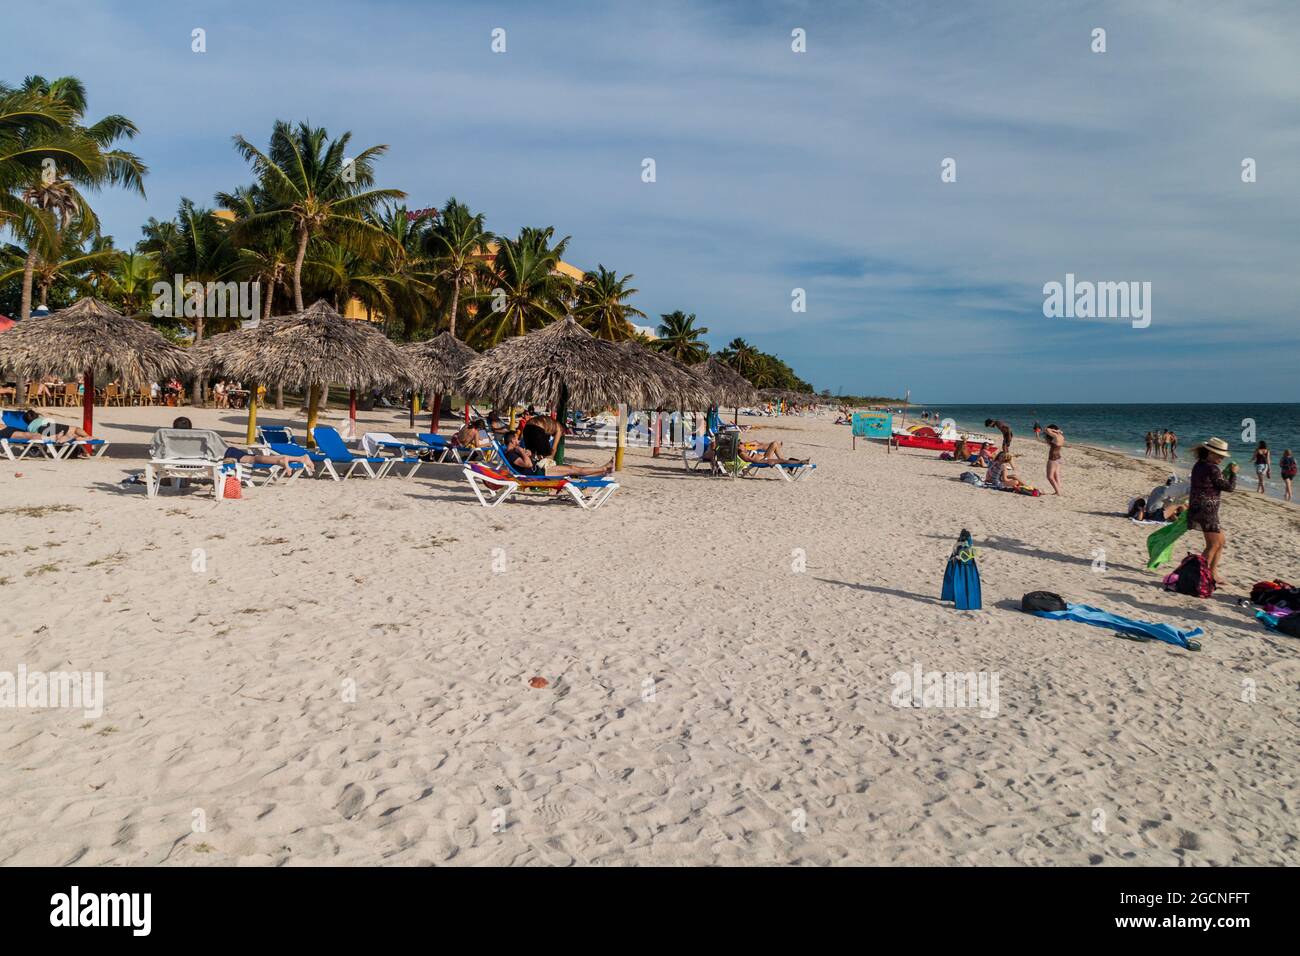 PLAYA ANCON, CUBA - 9 FÉVRIER 2016 : les touristes se baignent au soleil sur la plage Playa Ancon près de Trinidad, Cuba Banque D'Images